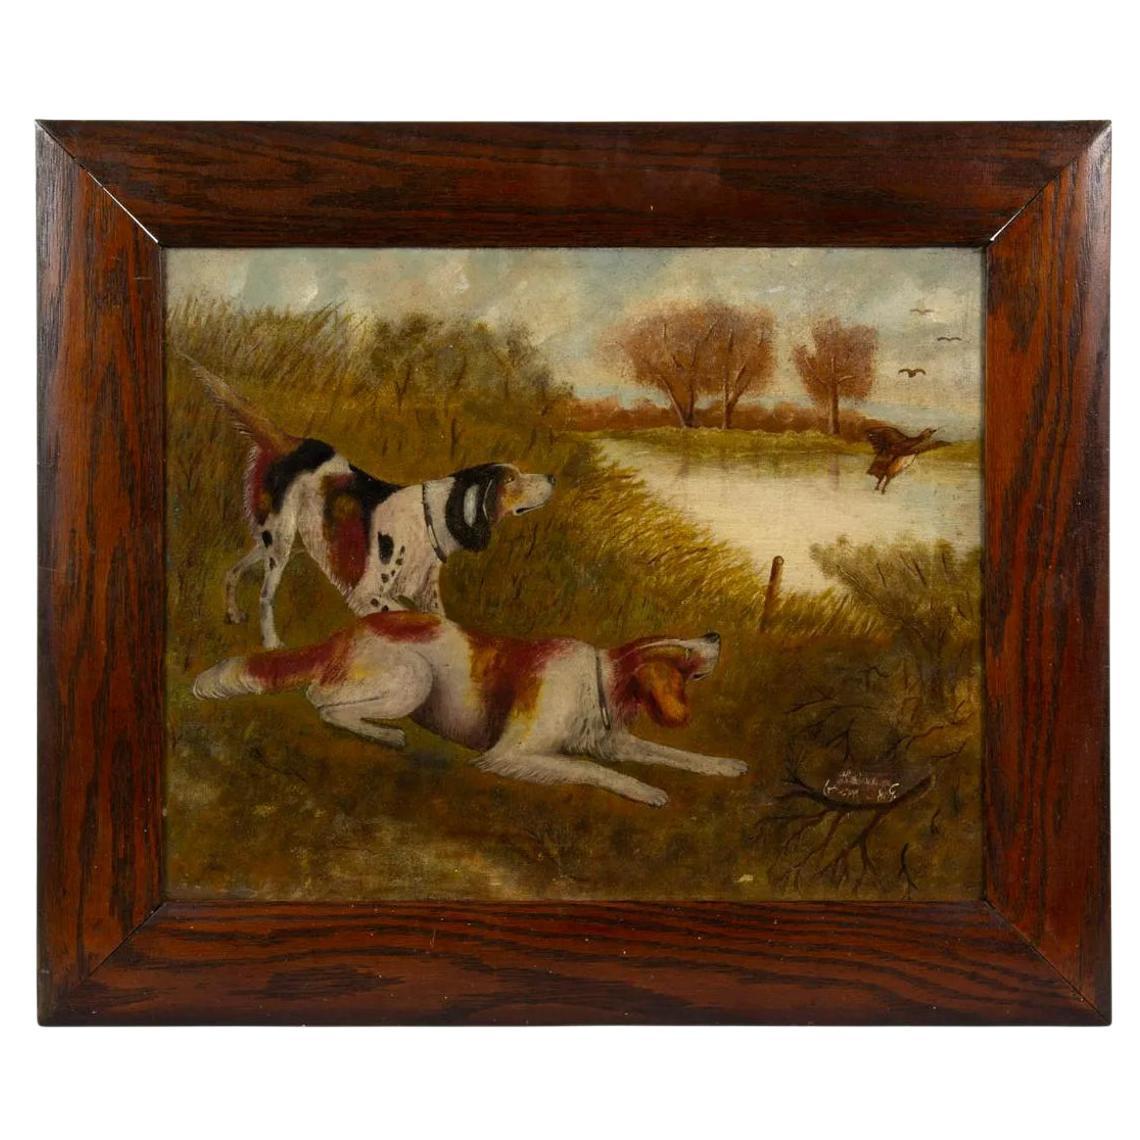 Peinture à l'huile sur toile artisanale de la fin du XIXe siècle représentant des chiens de chasse sur un lac rural